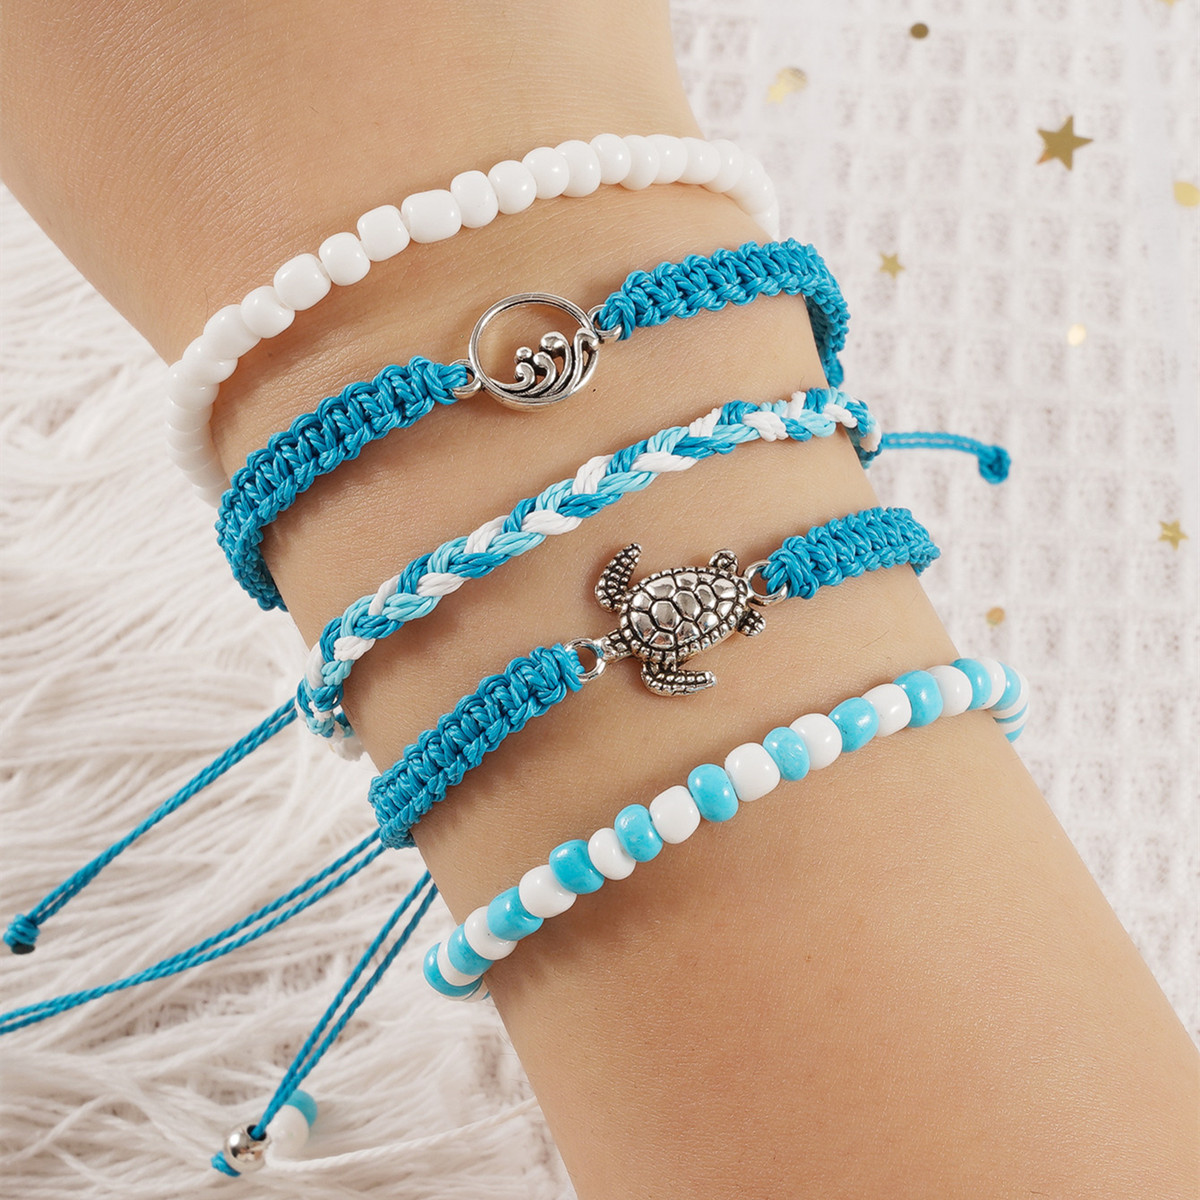 1:Blue bracelet